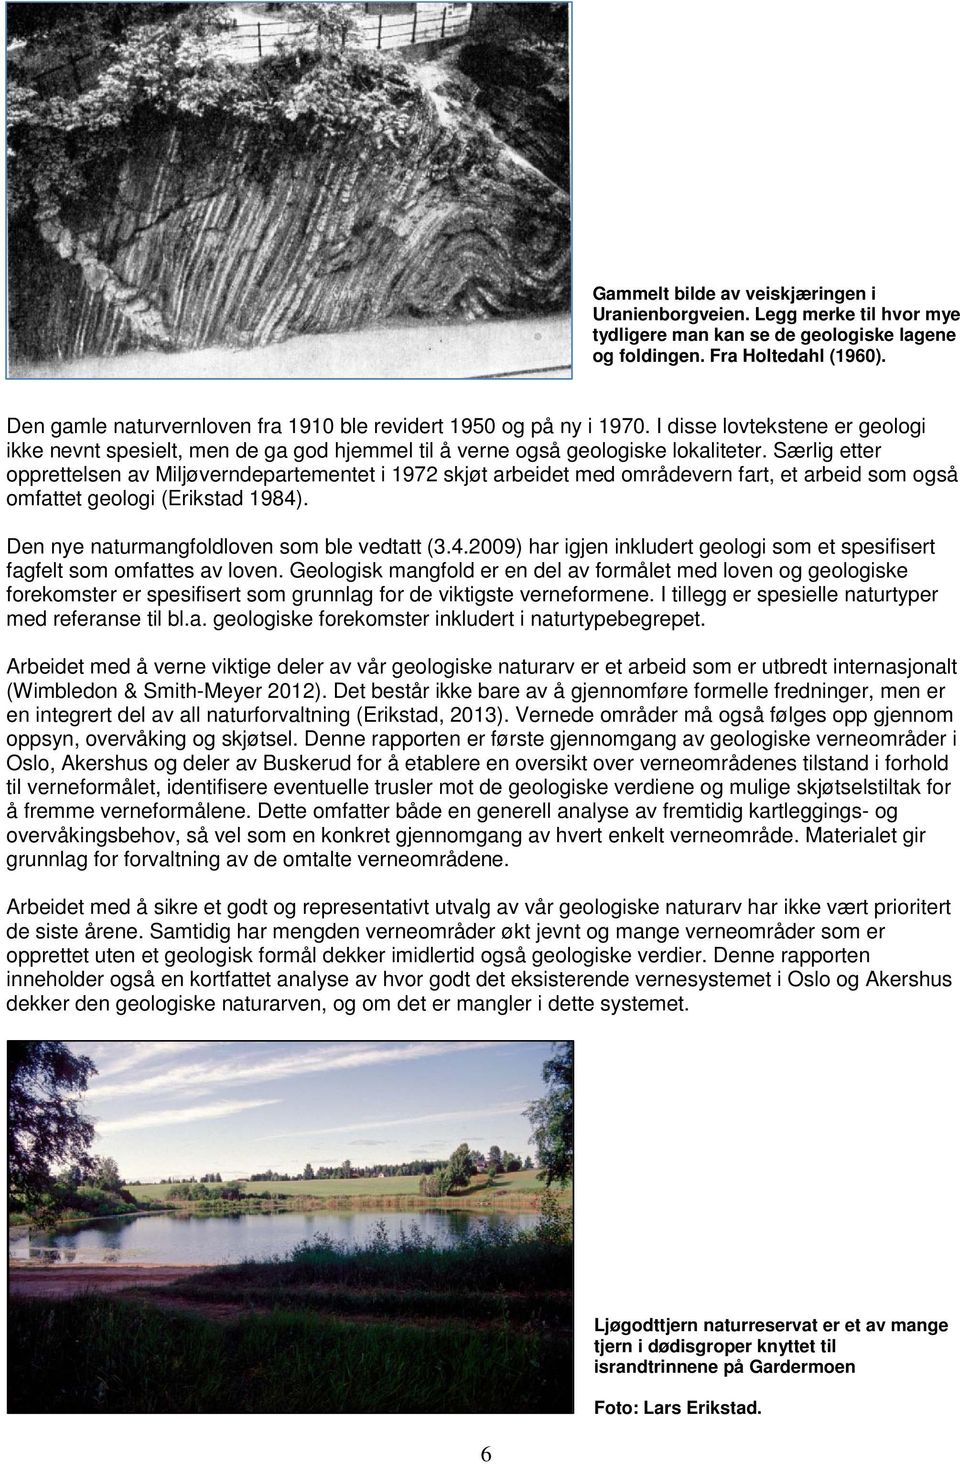 Særlig etter opprettelsen av Miljøverndepartementet i 1972 skjøt arbeidet med områdevern fart, et arbeid som også omfattet geologi (Erikstad 1984)